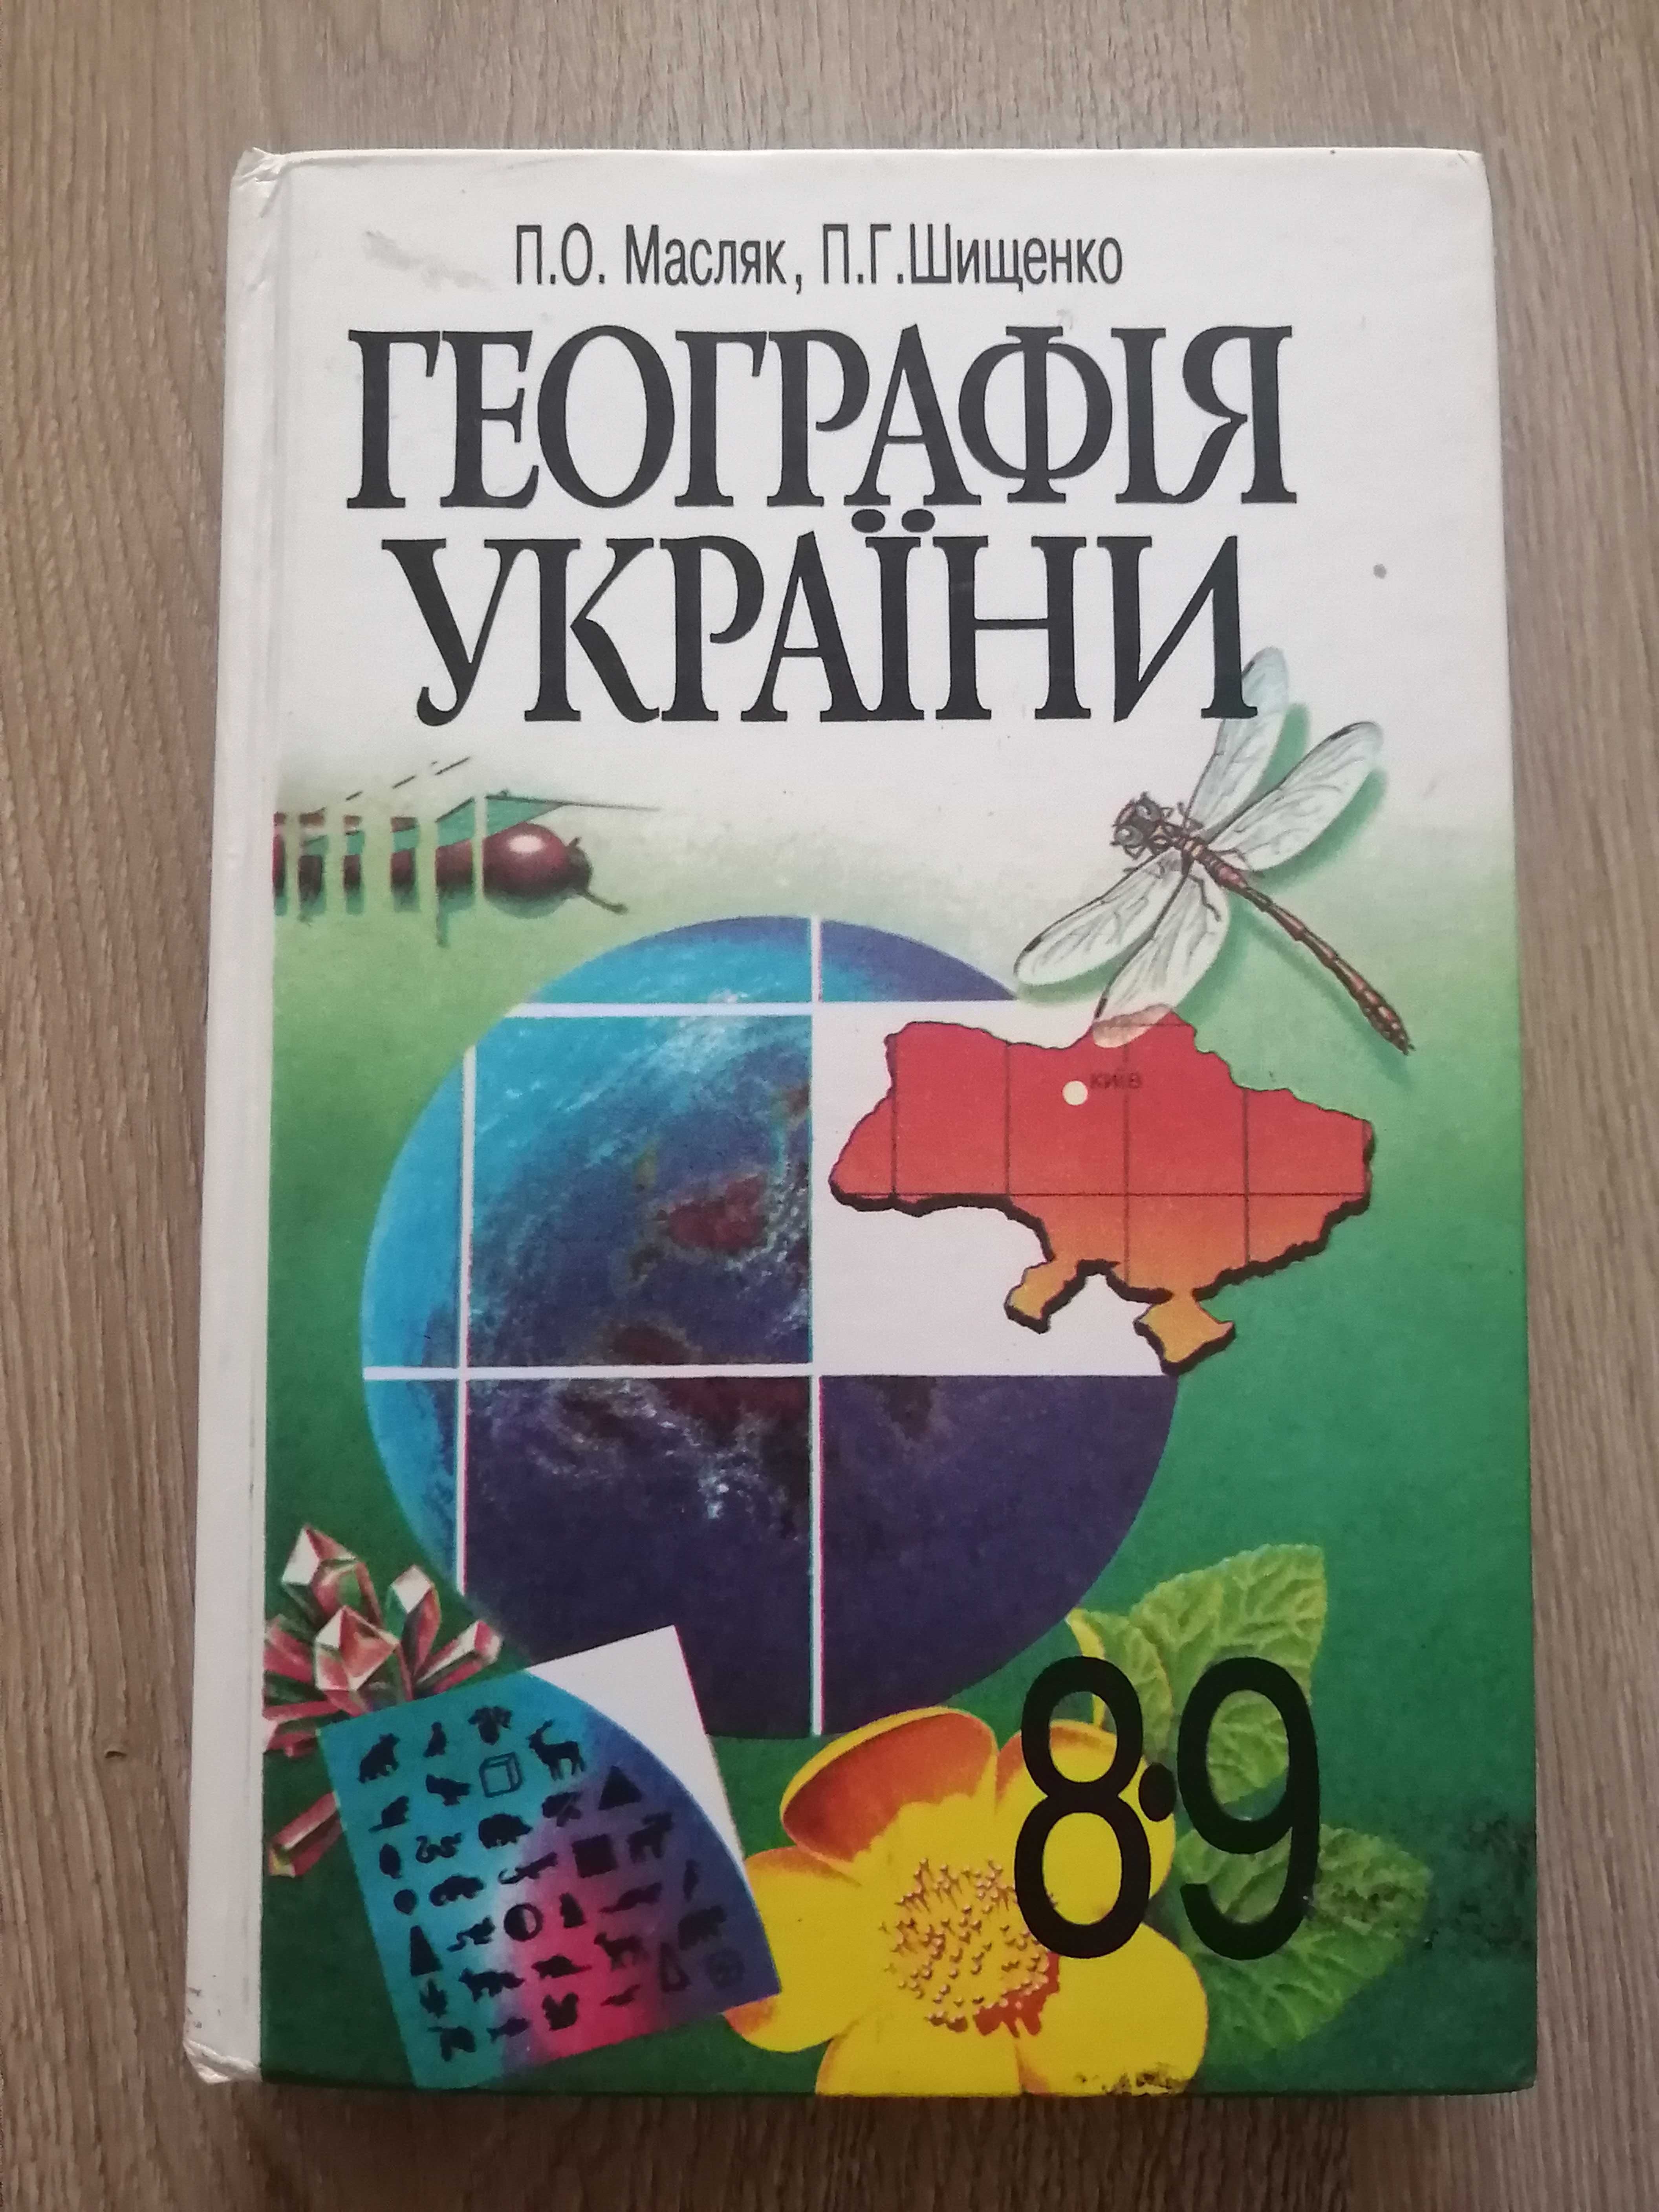 Географія України 8-9 клас 
Масляк П. О., Шищенко П. Г.